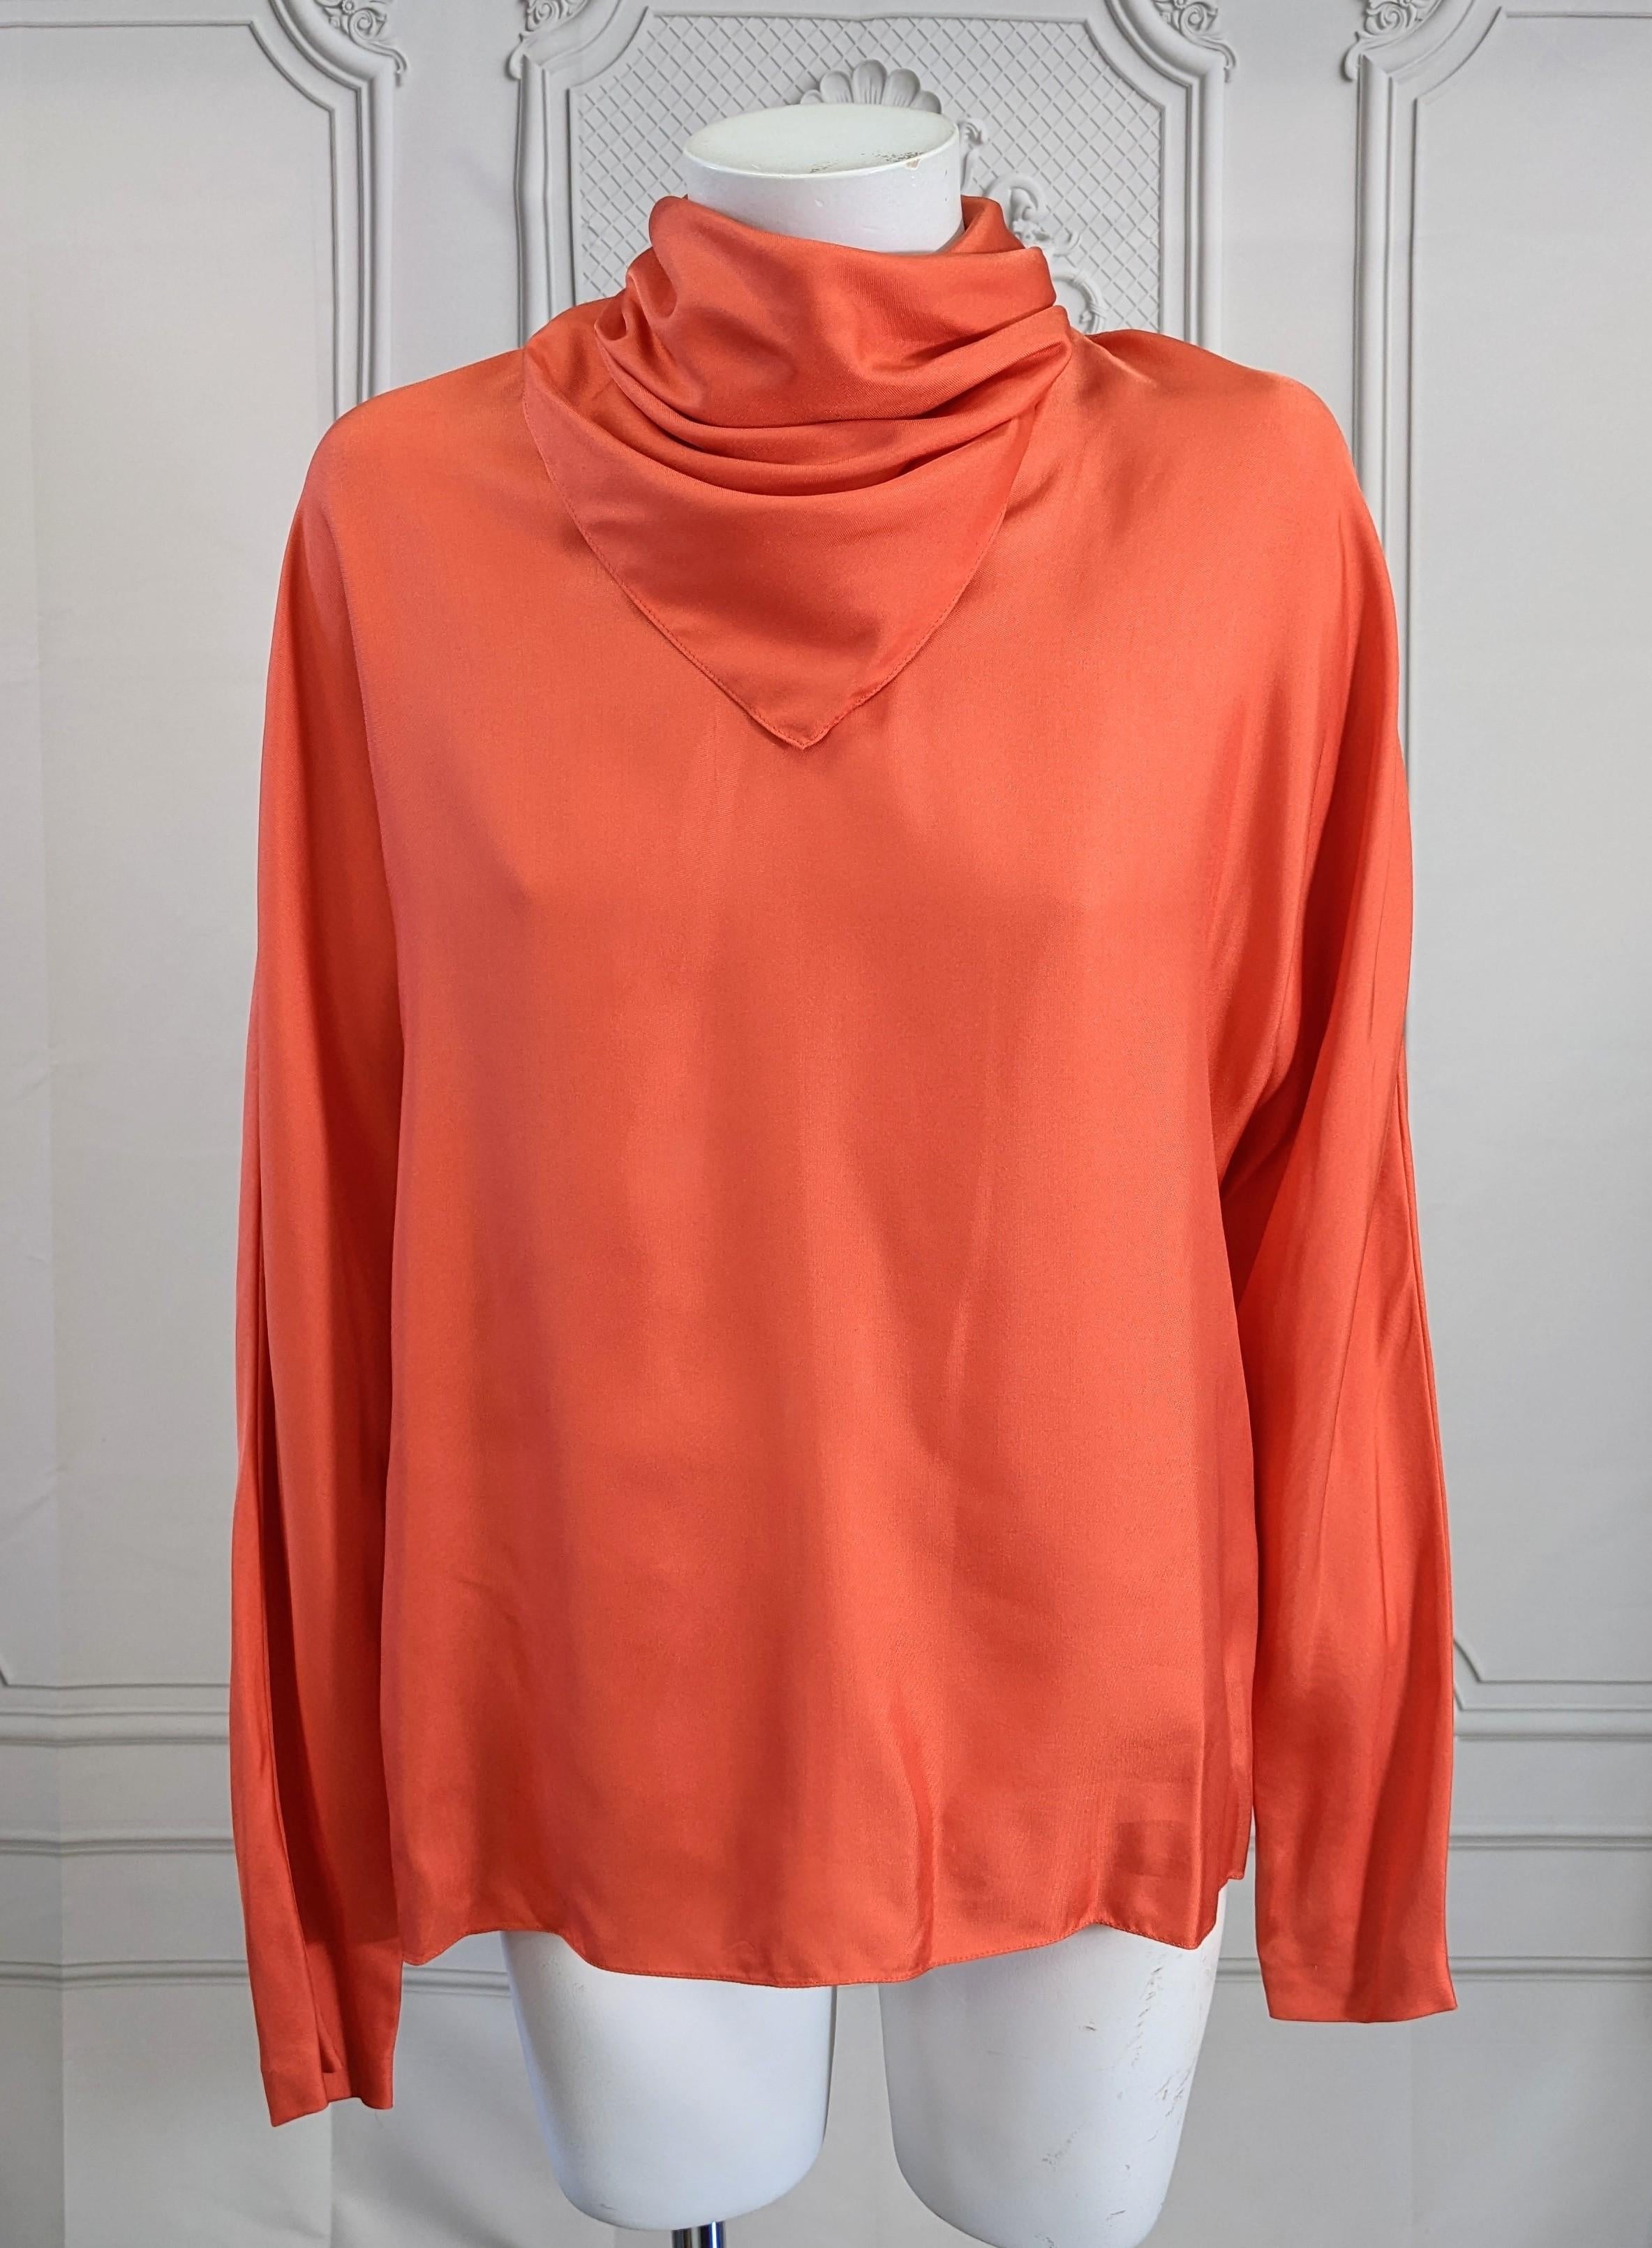 Stephen Sprouse Orangefarbene Bluse aus Seidenköper mit angenähtem Schalausschnitt für einen seiner kultigen monochromen Rocker-Looks. Weicher Seiden-Twill mit hochgeschnittenen Dolman-Ärmeln und doppeltem, drapiertem Schal-Ausschnitt, der am Rücken